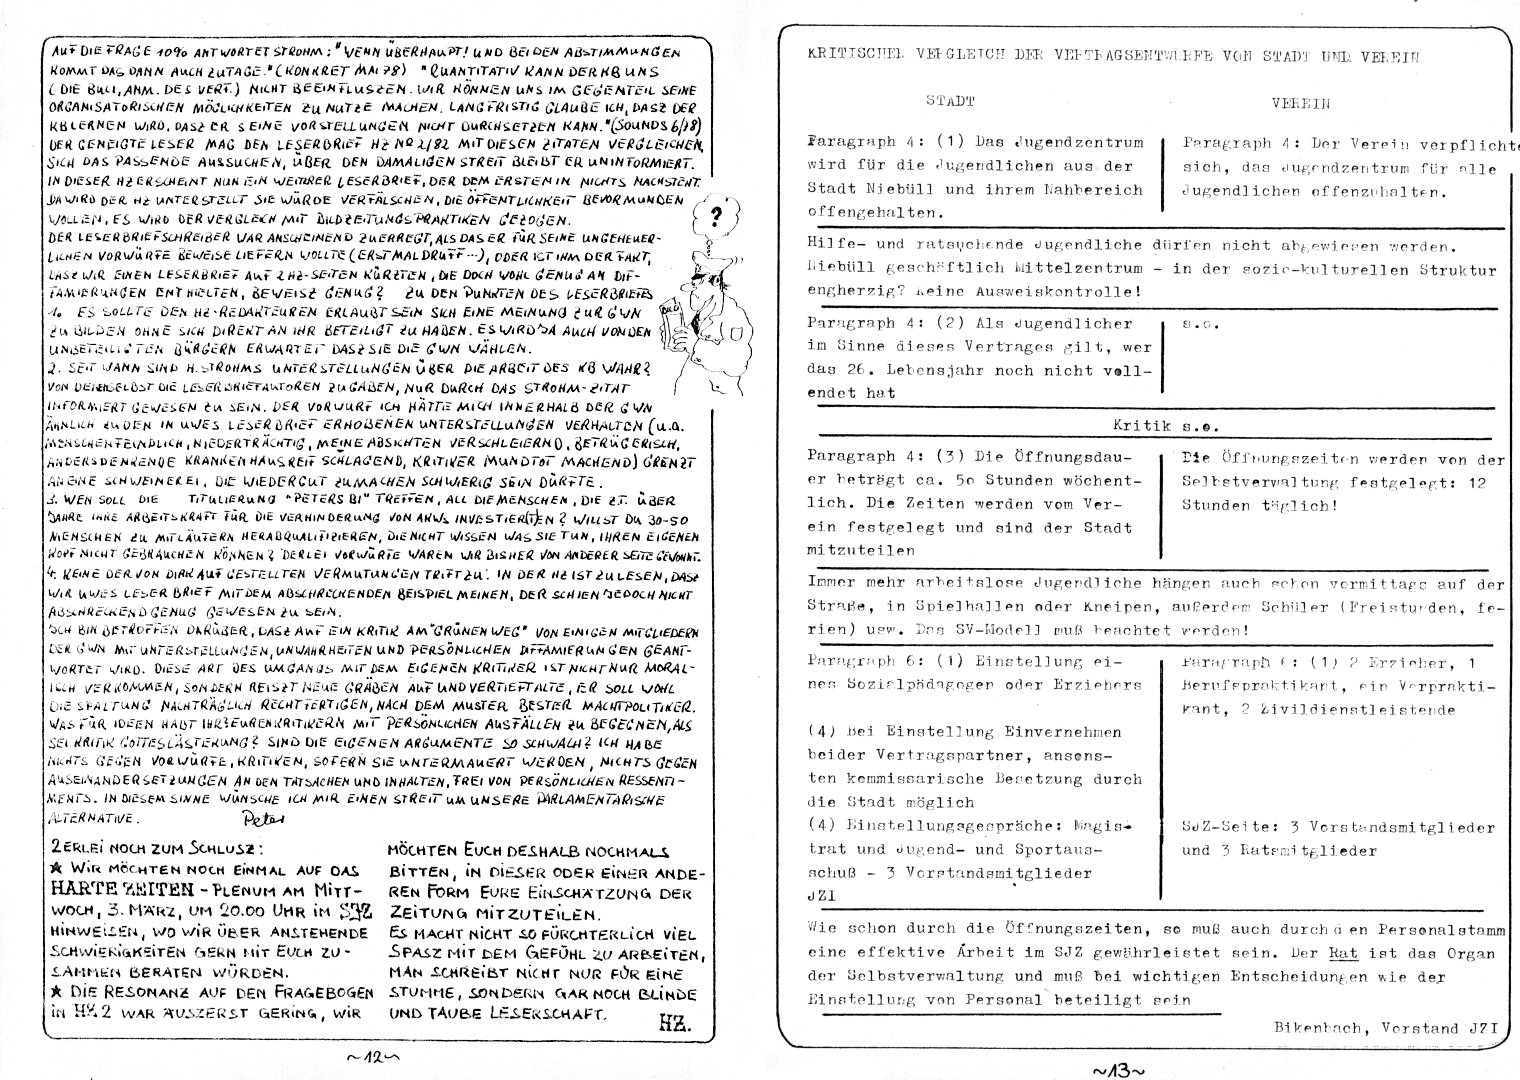 HZ 10 - Seite 12 und 13